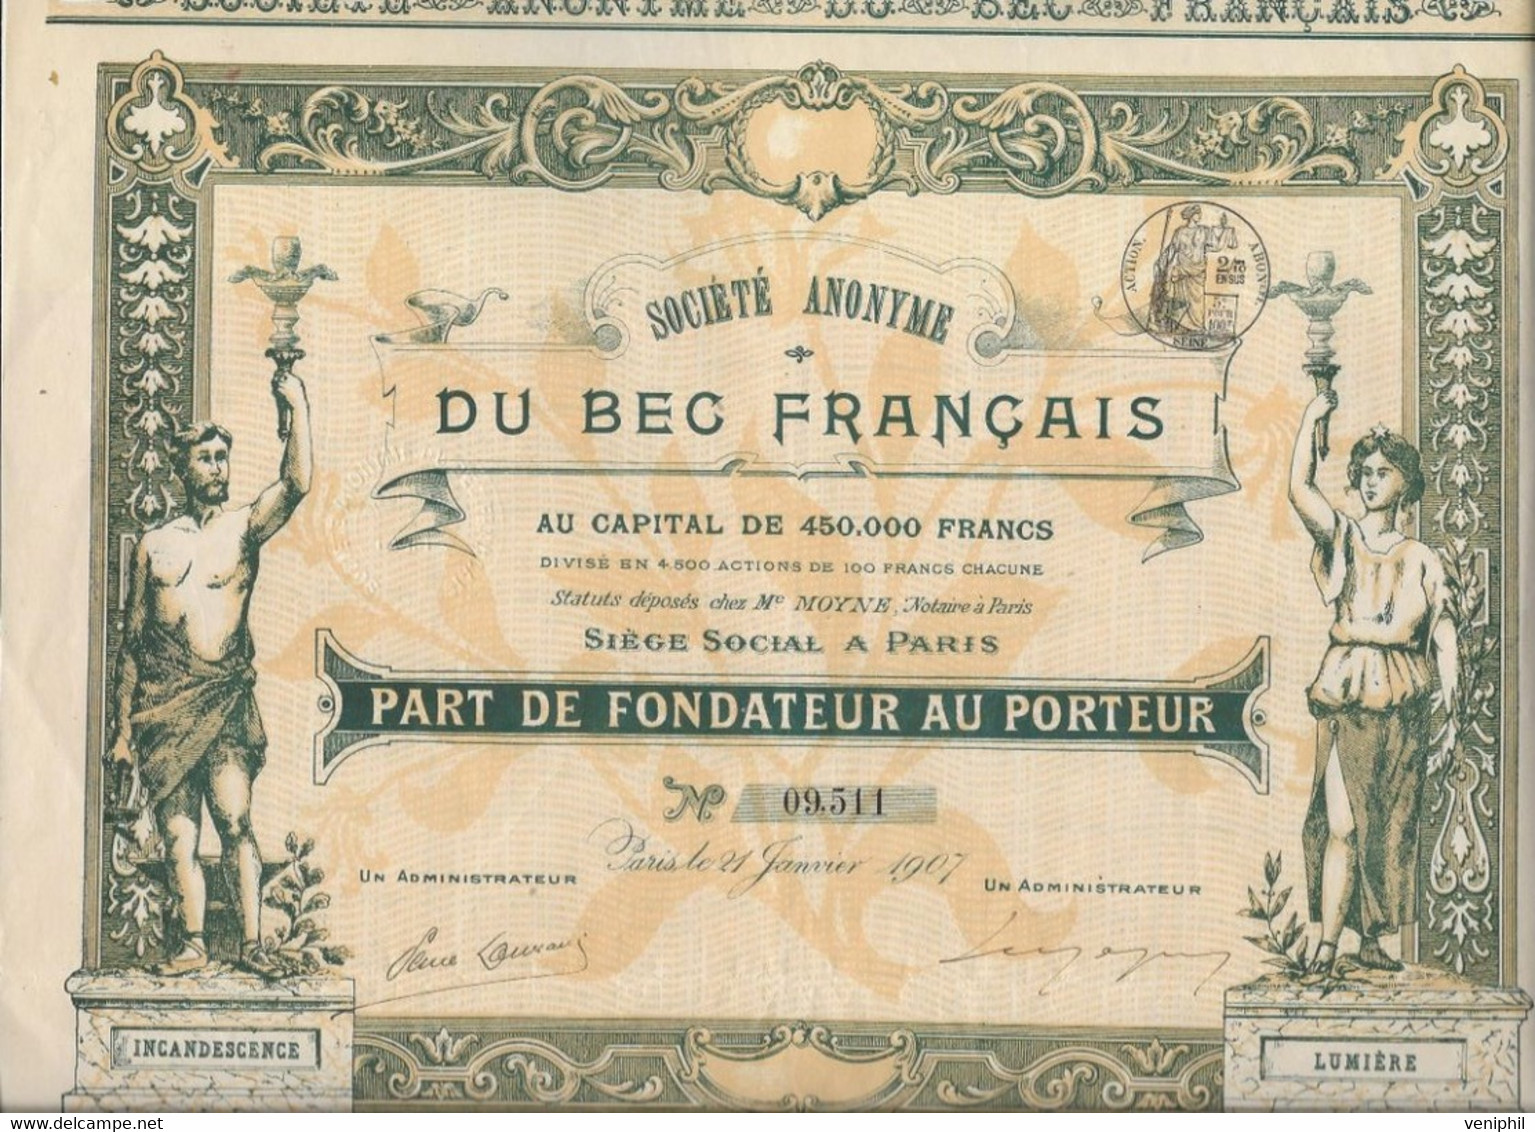 SOCIETE DU BEC FRANCAIS -PART DE FONDATEUR -BELLE ILLUSTRATION - ANNEE 1907 - Elettricità & Gas